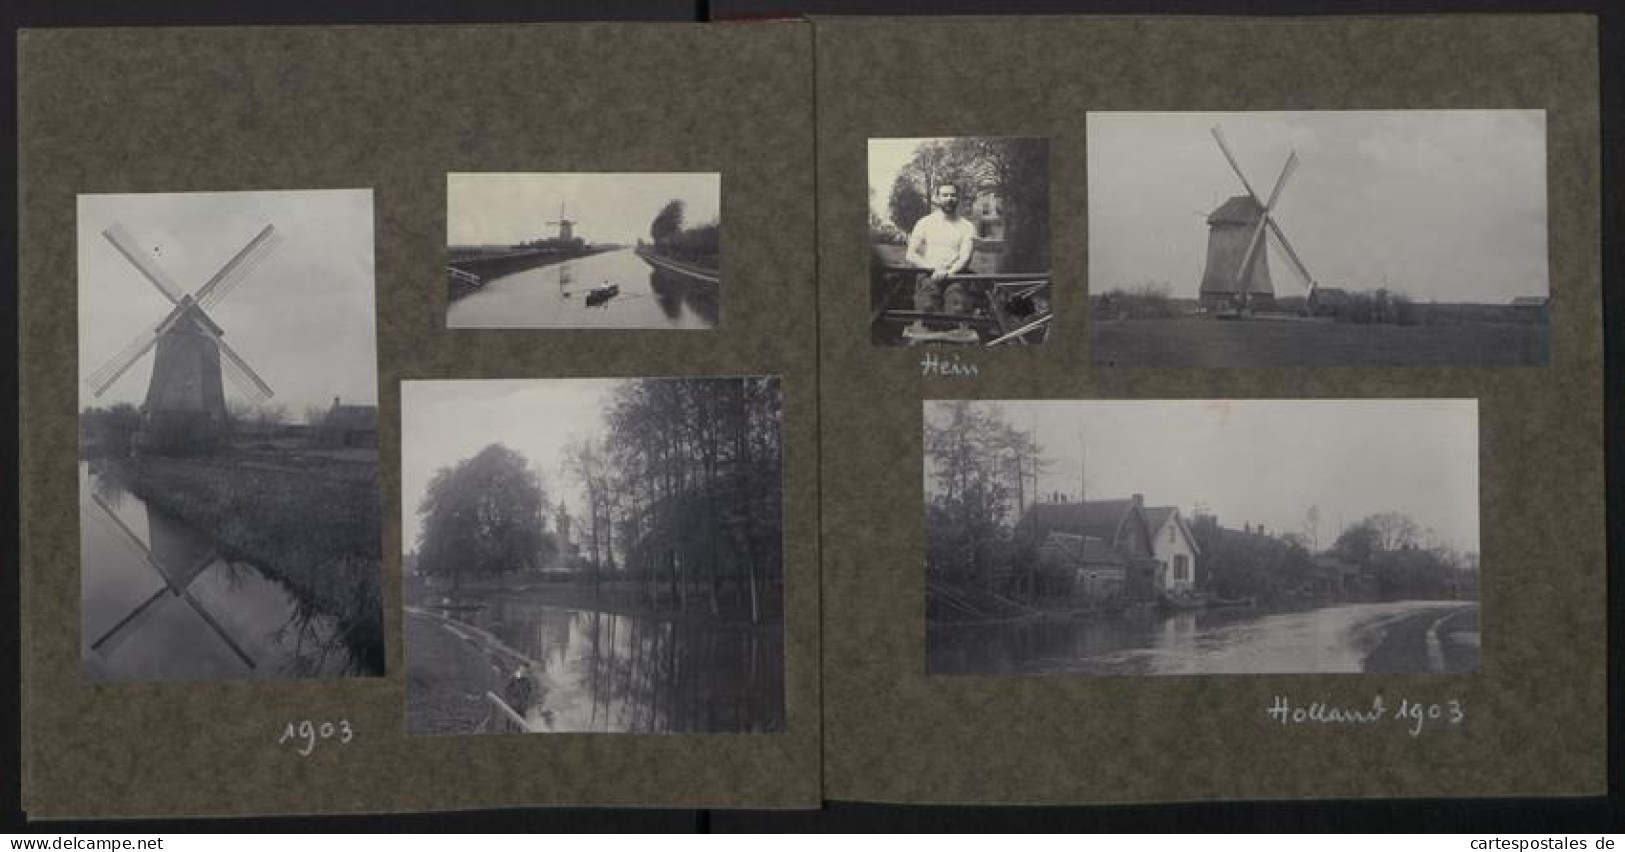 7 Fotoalben mit 381 Fotografien, deutscher Geologe Karl Regelmann, private Aufnahmen von 1850-1903, Vermessung, Geräte 